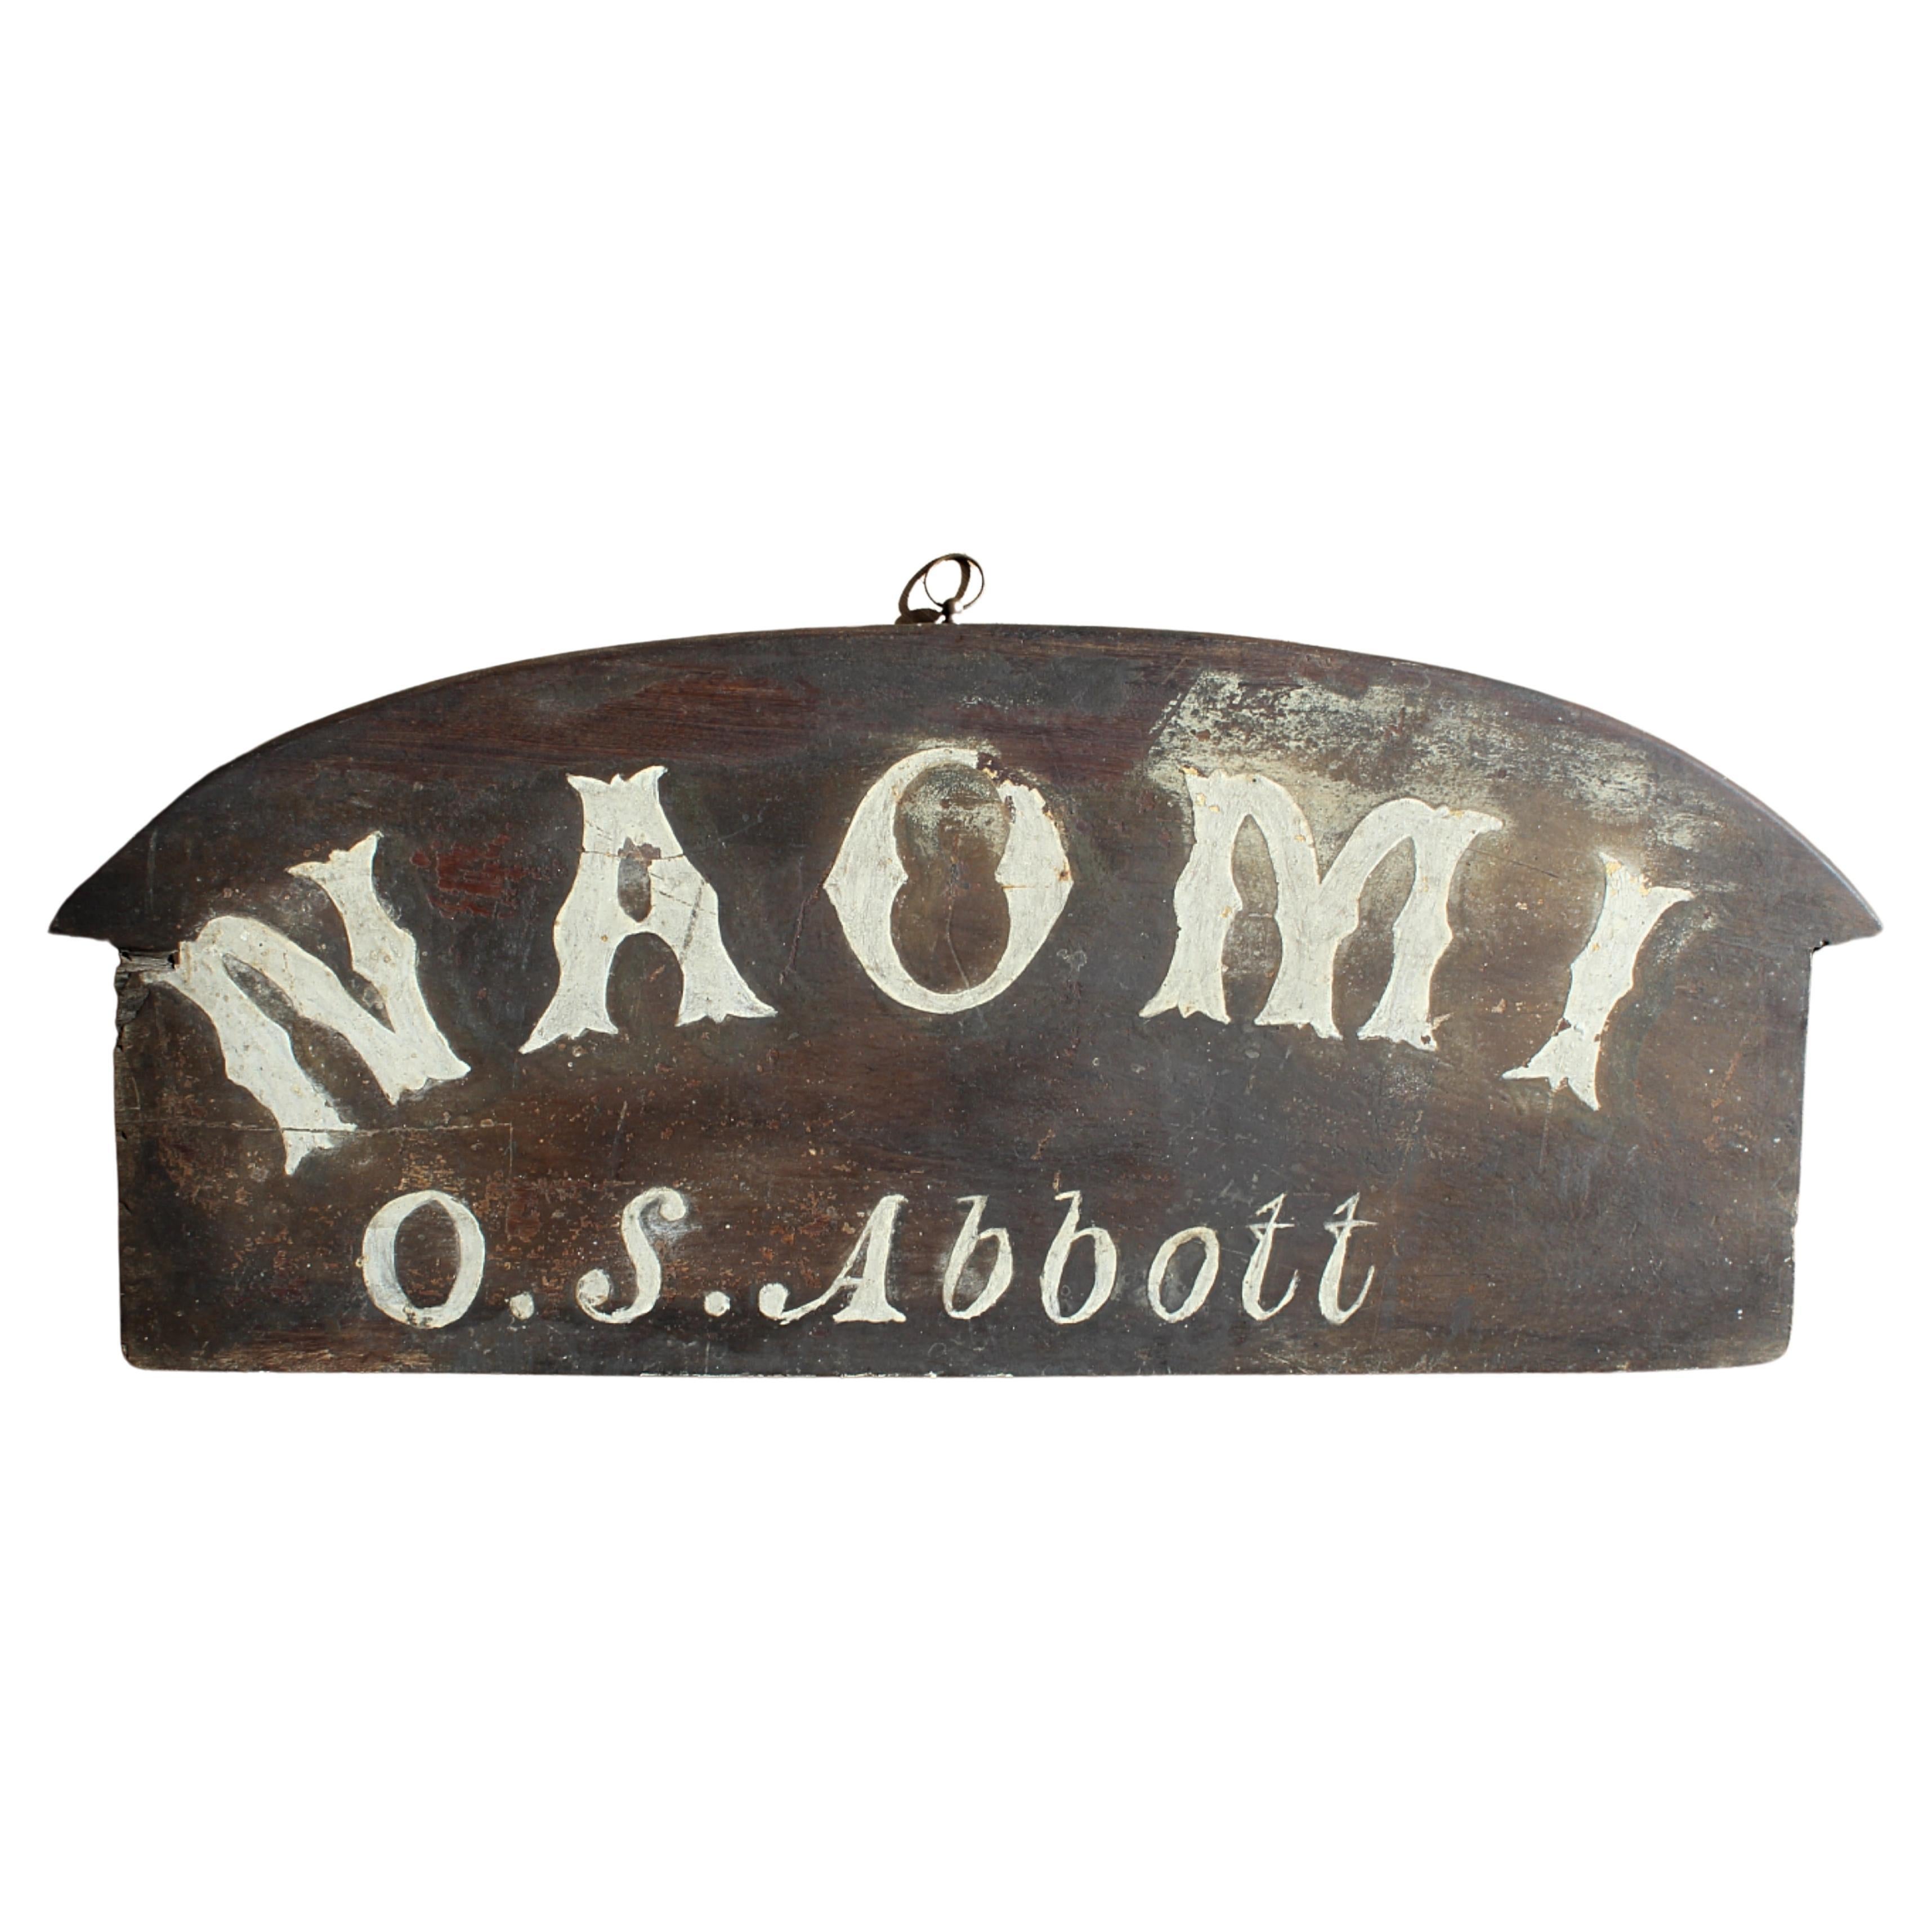 Stern- Nameboard „Naomi“ des frühen 20. Jahrhunderts, Schaukel-Fischboot, Marine maritimen Schiffes im Angebot